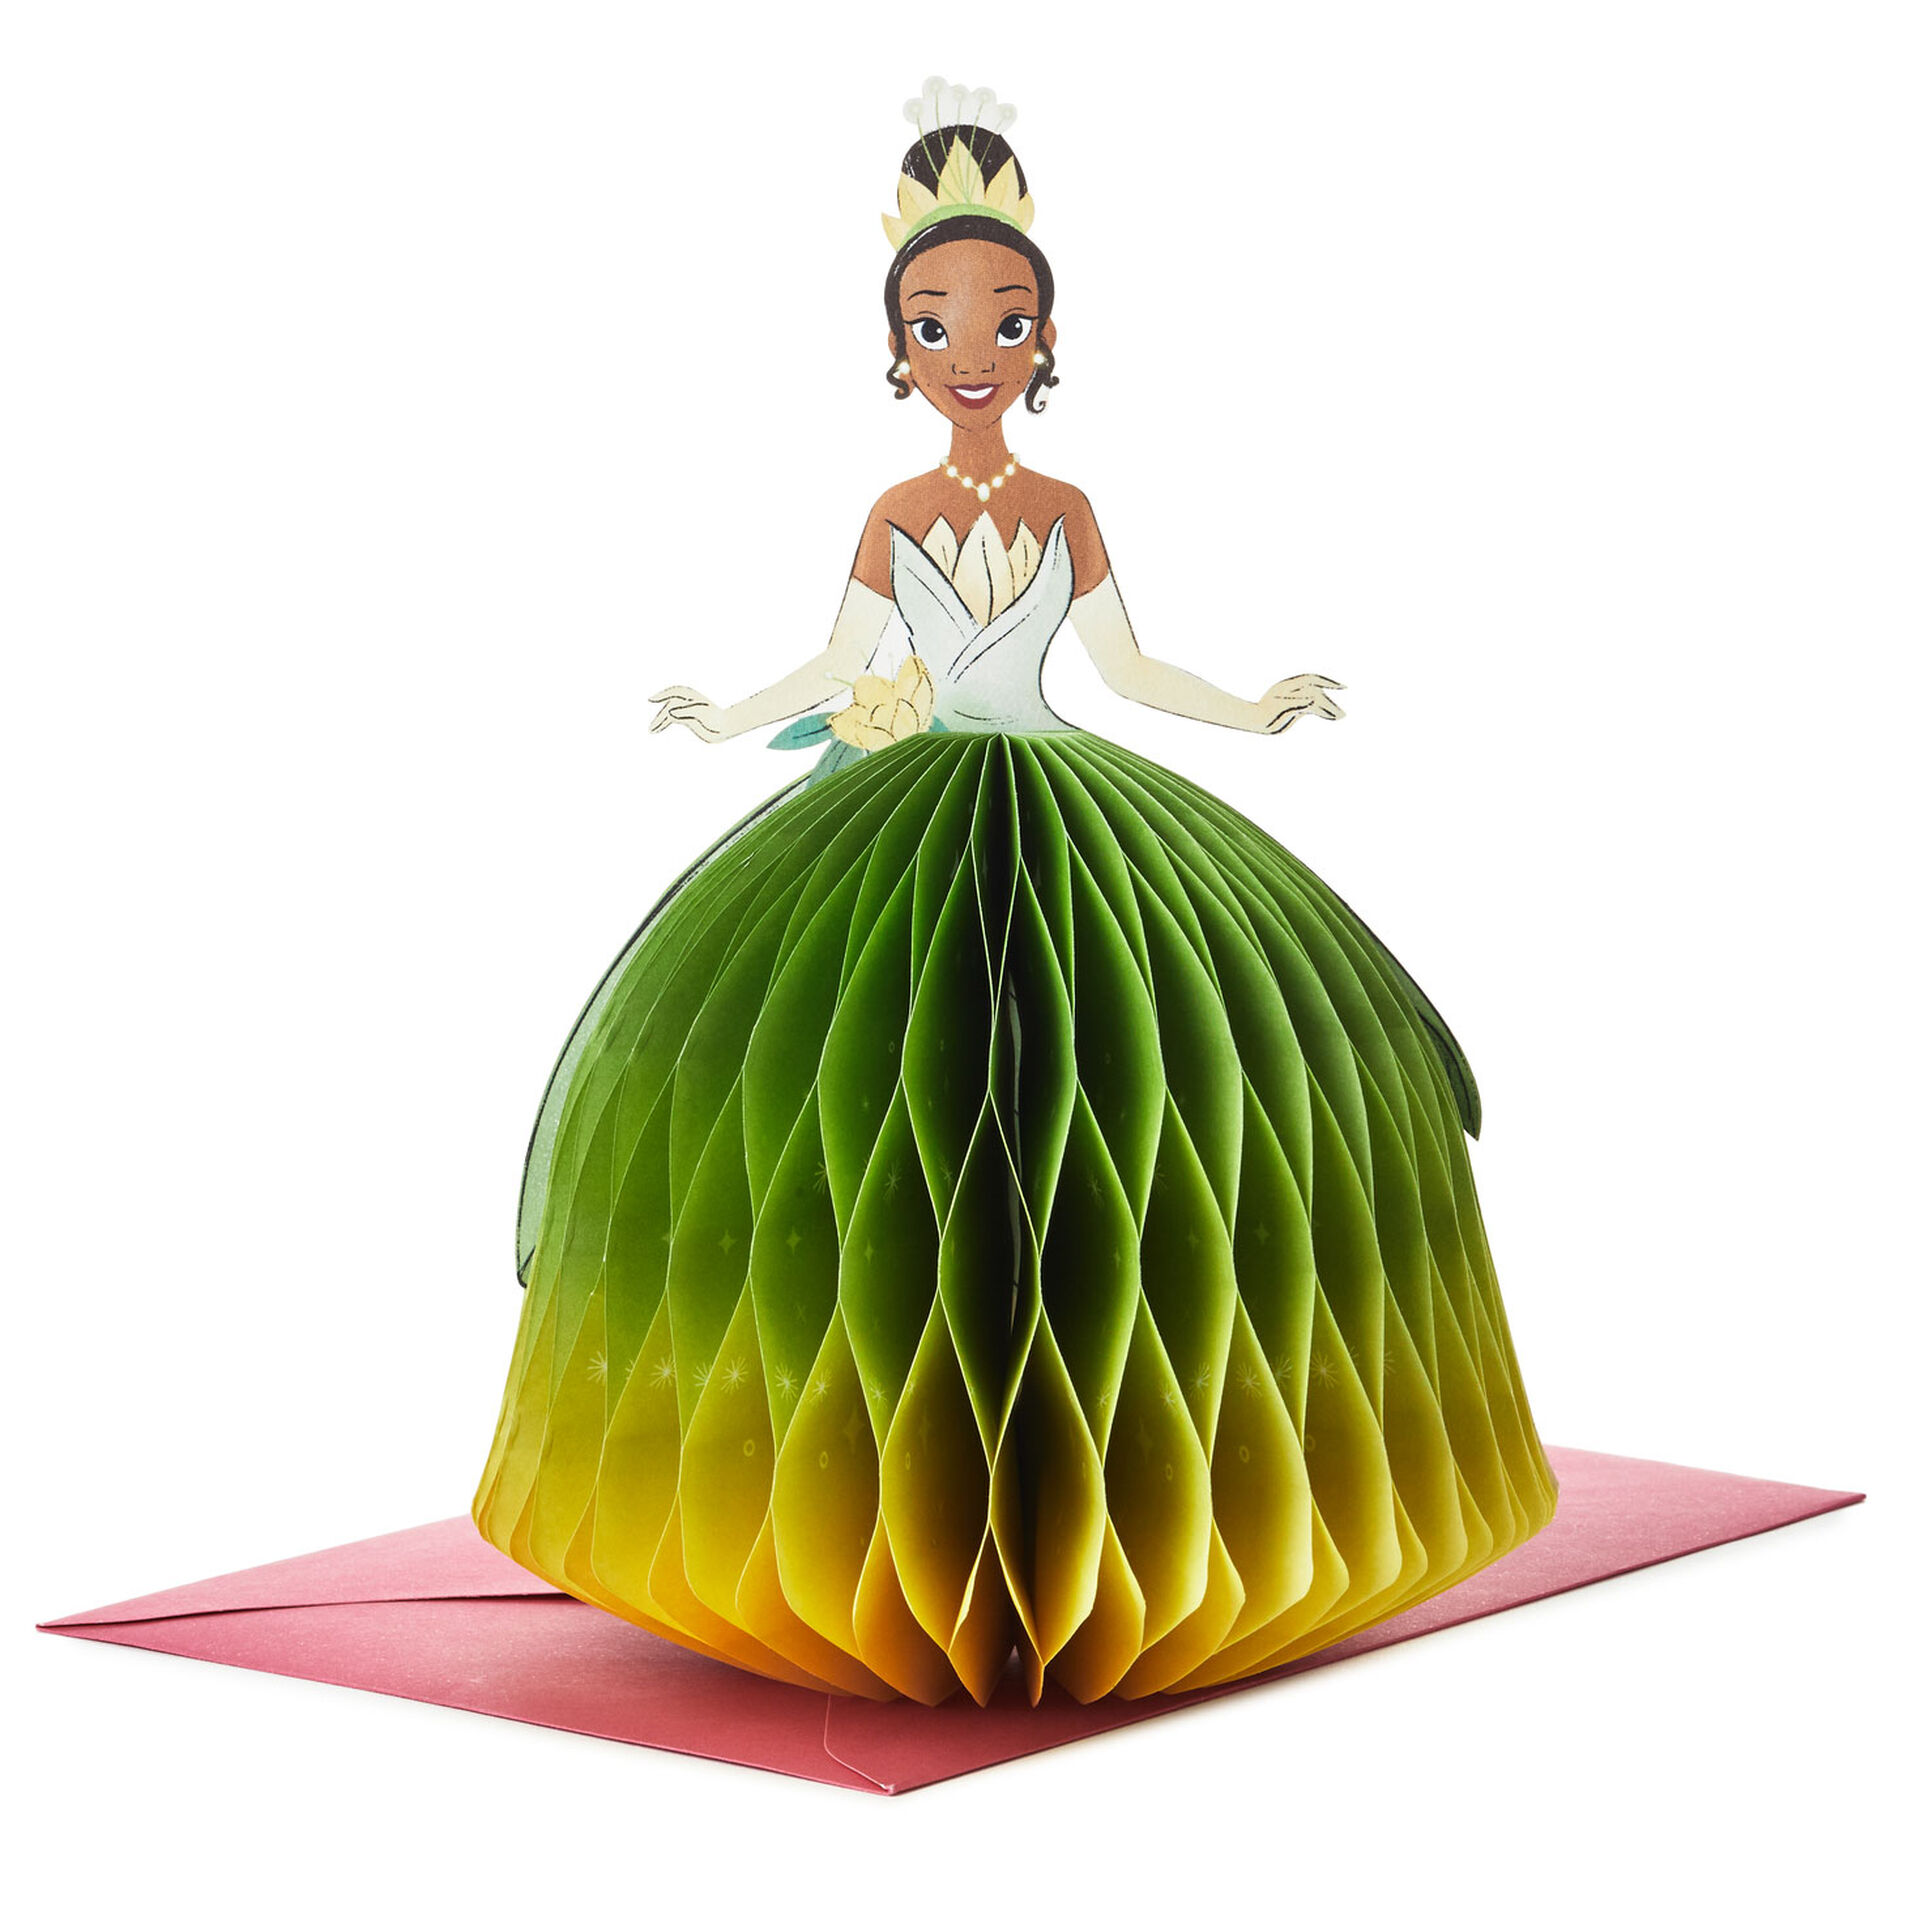 Disney-Princess-Tiana-Honeycomb-Dress-3D-PopUp-Card_699WDR1203_01